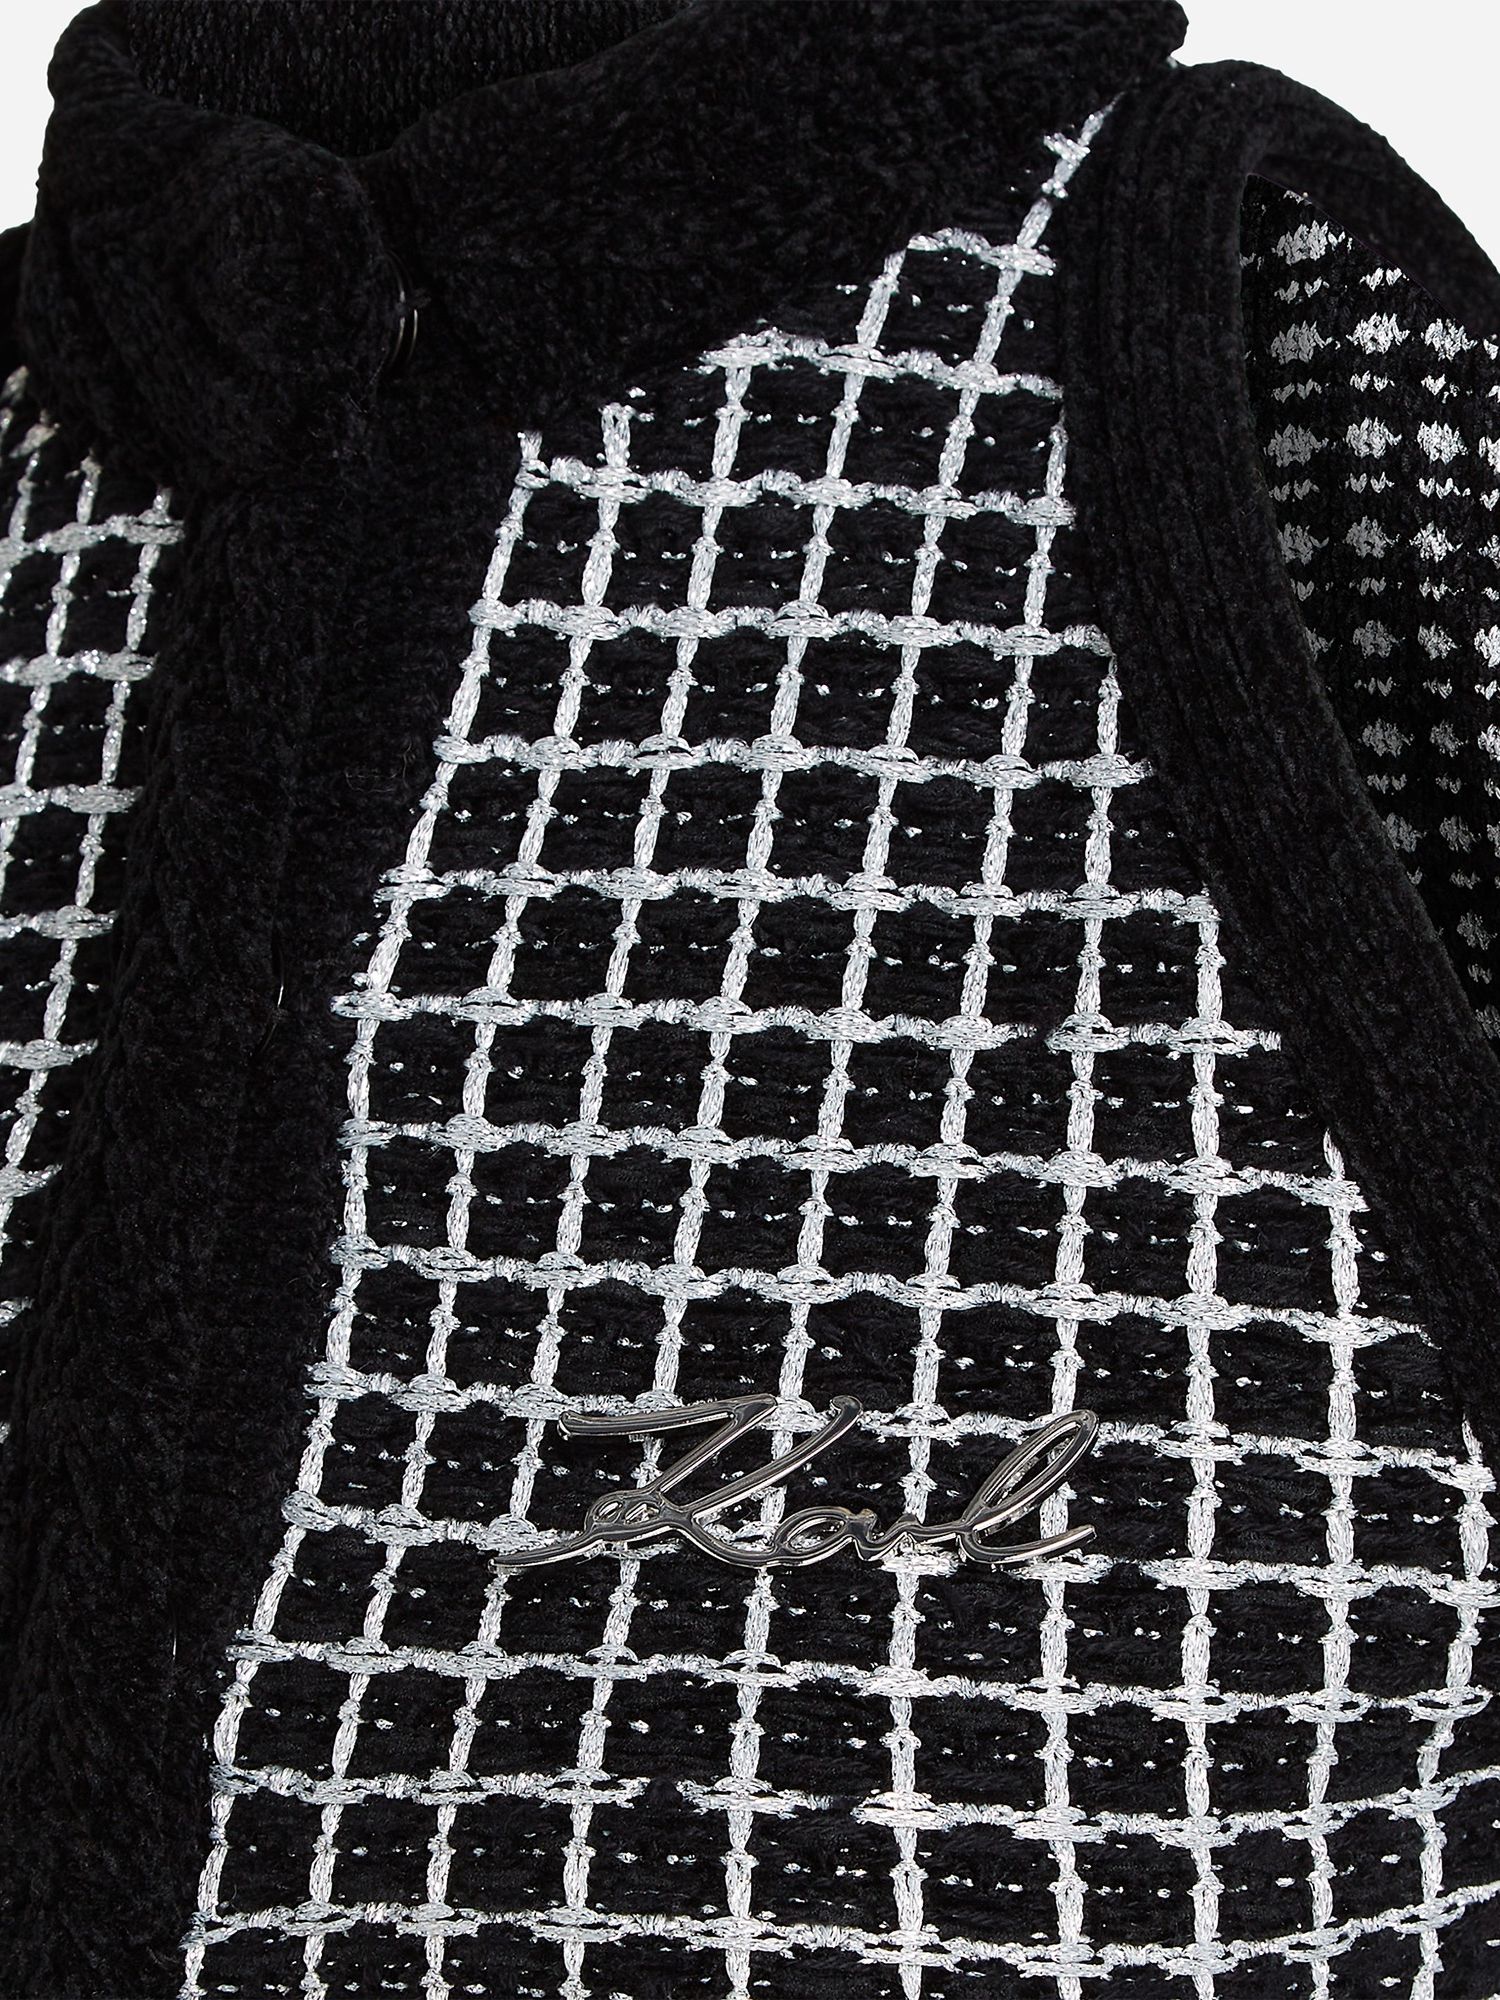 KARL LAGERFELD Cotton Blend Knit Dress, 989 Black/Silver, S